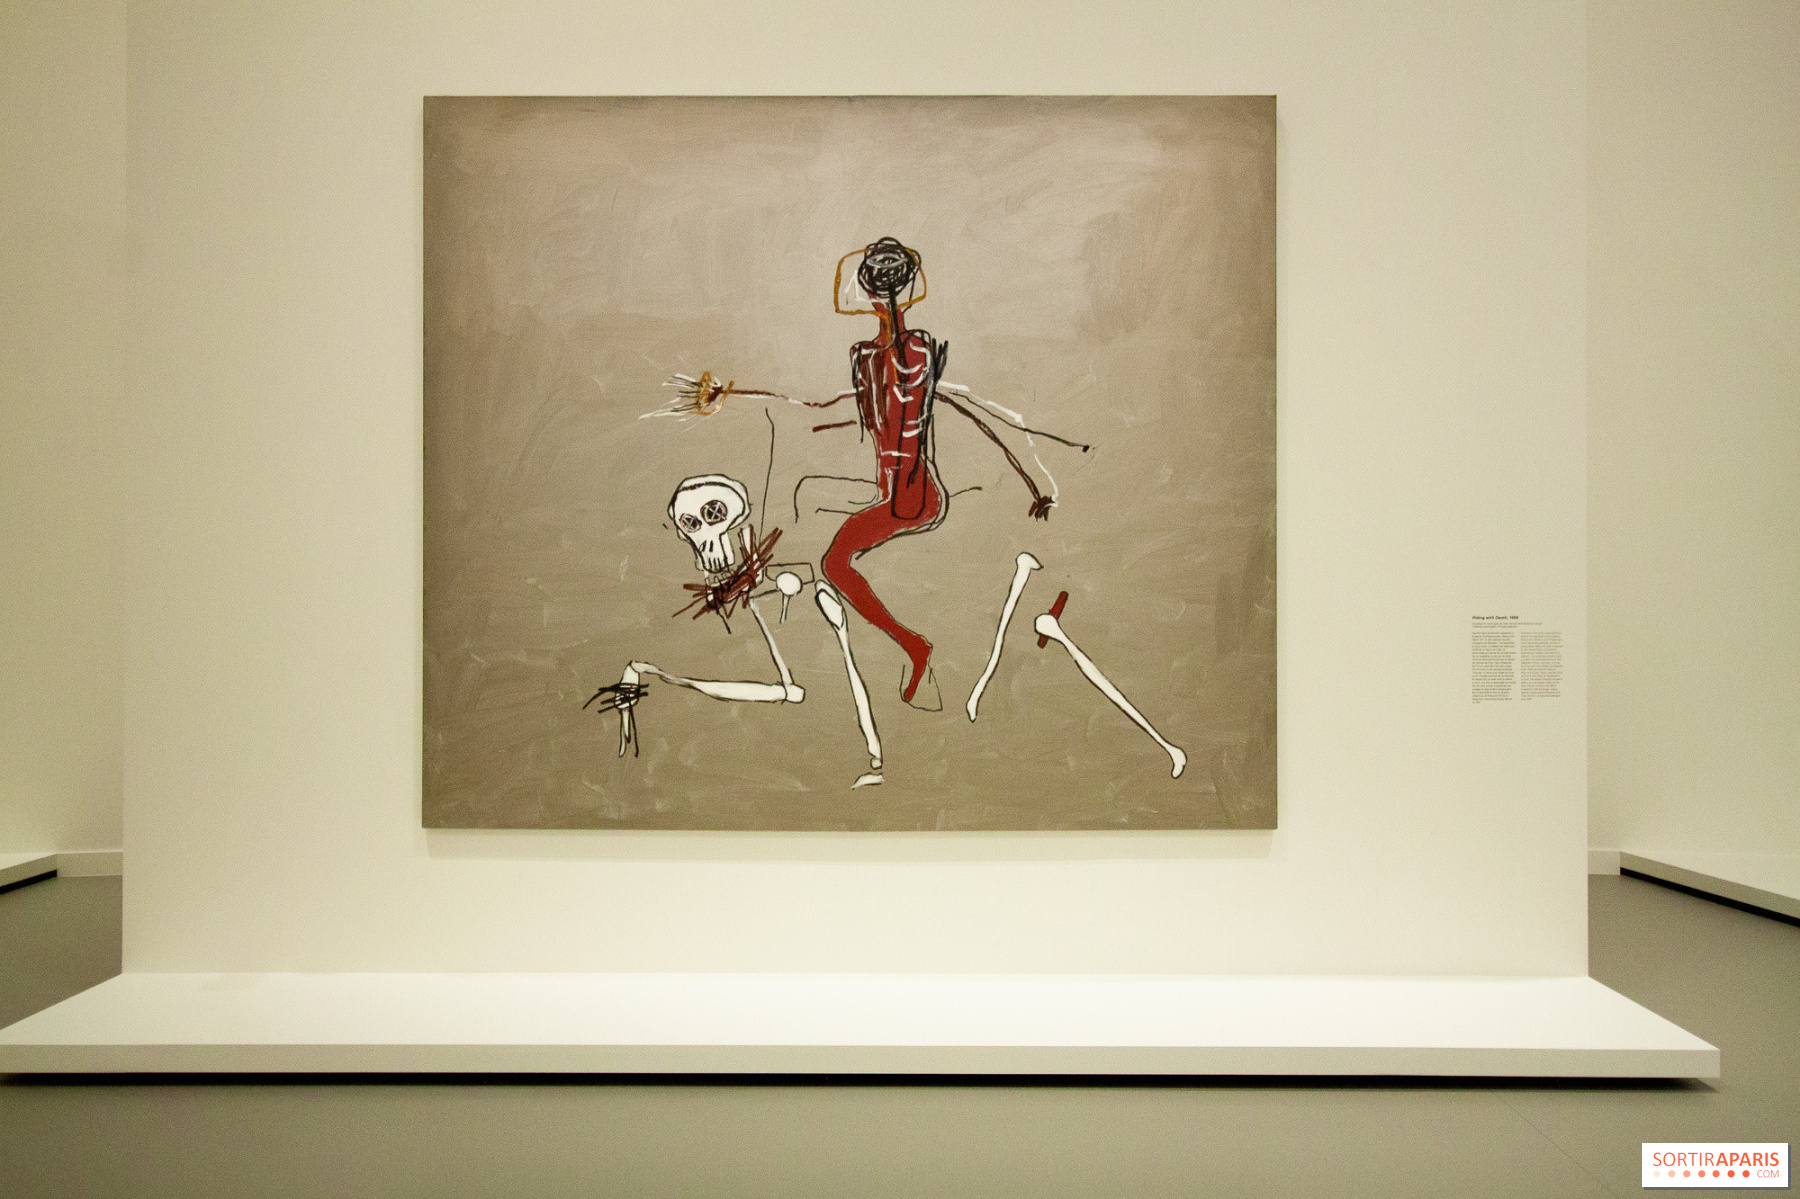 Art: Jean-Michel Basquiat and Egon Schiele, Fondation Louis